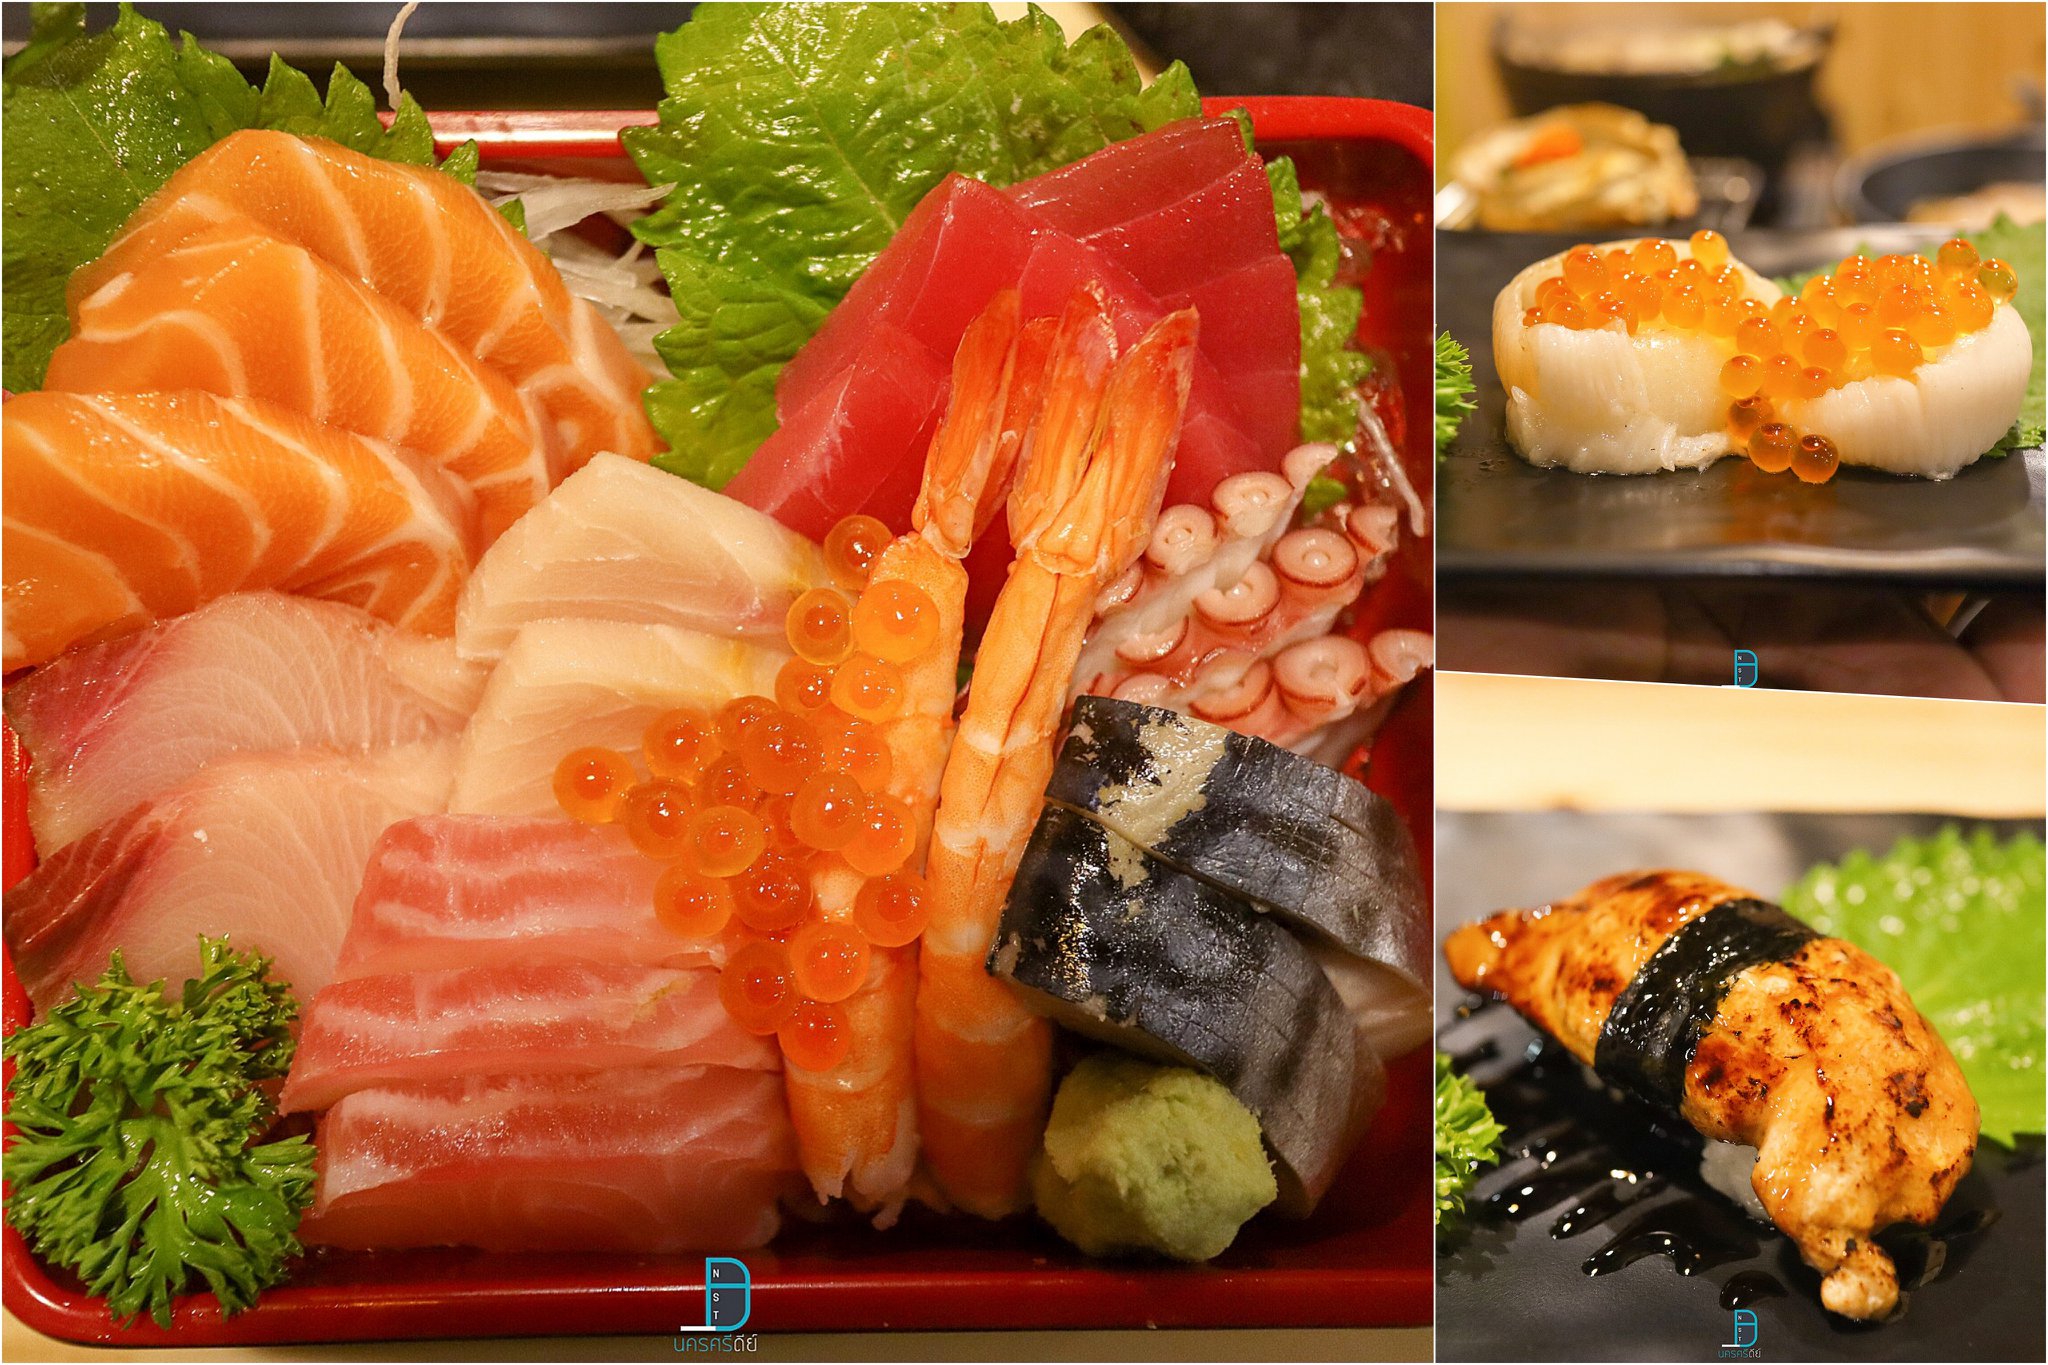  3.-มาต่อกันด้วยร้านอาหารญี่ปุ่นสุดฮิต-ถือว่าเป็นเจ้าแรกของเมืองนครกันเลย-นั่นก็คือร้าน-Ginza-Izakaya-ขอบอกว่าเมนูมีเยอะมาก-ร้านนั่งชิวๆสบายๆ-รสชาติเด็ดเลยล่ะครับ ของกิน,ร้านอร่อย,ร้านอาหาร,อาหารญี่ปุ่น,อาหารเกาหลี,บุฟเฟ่ต์